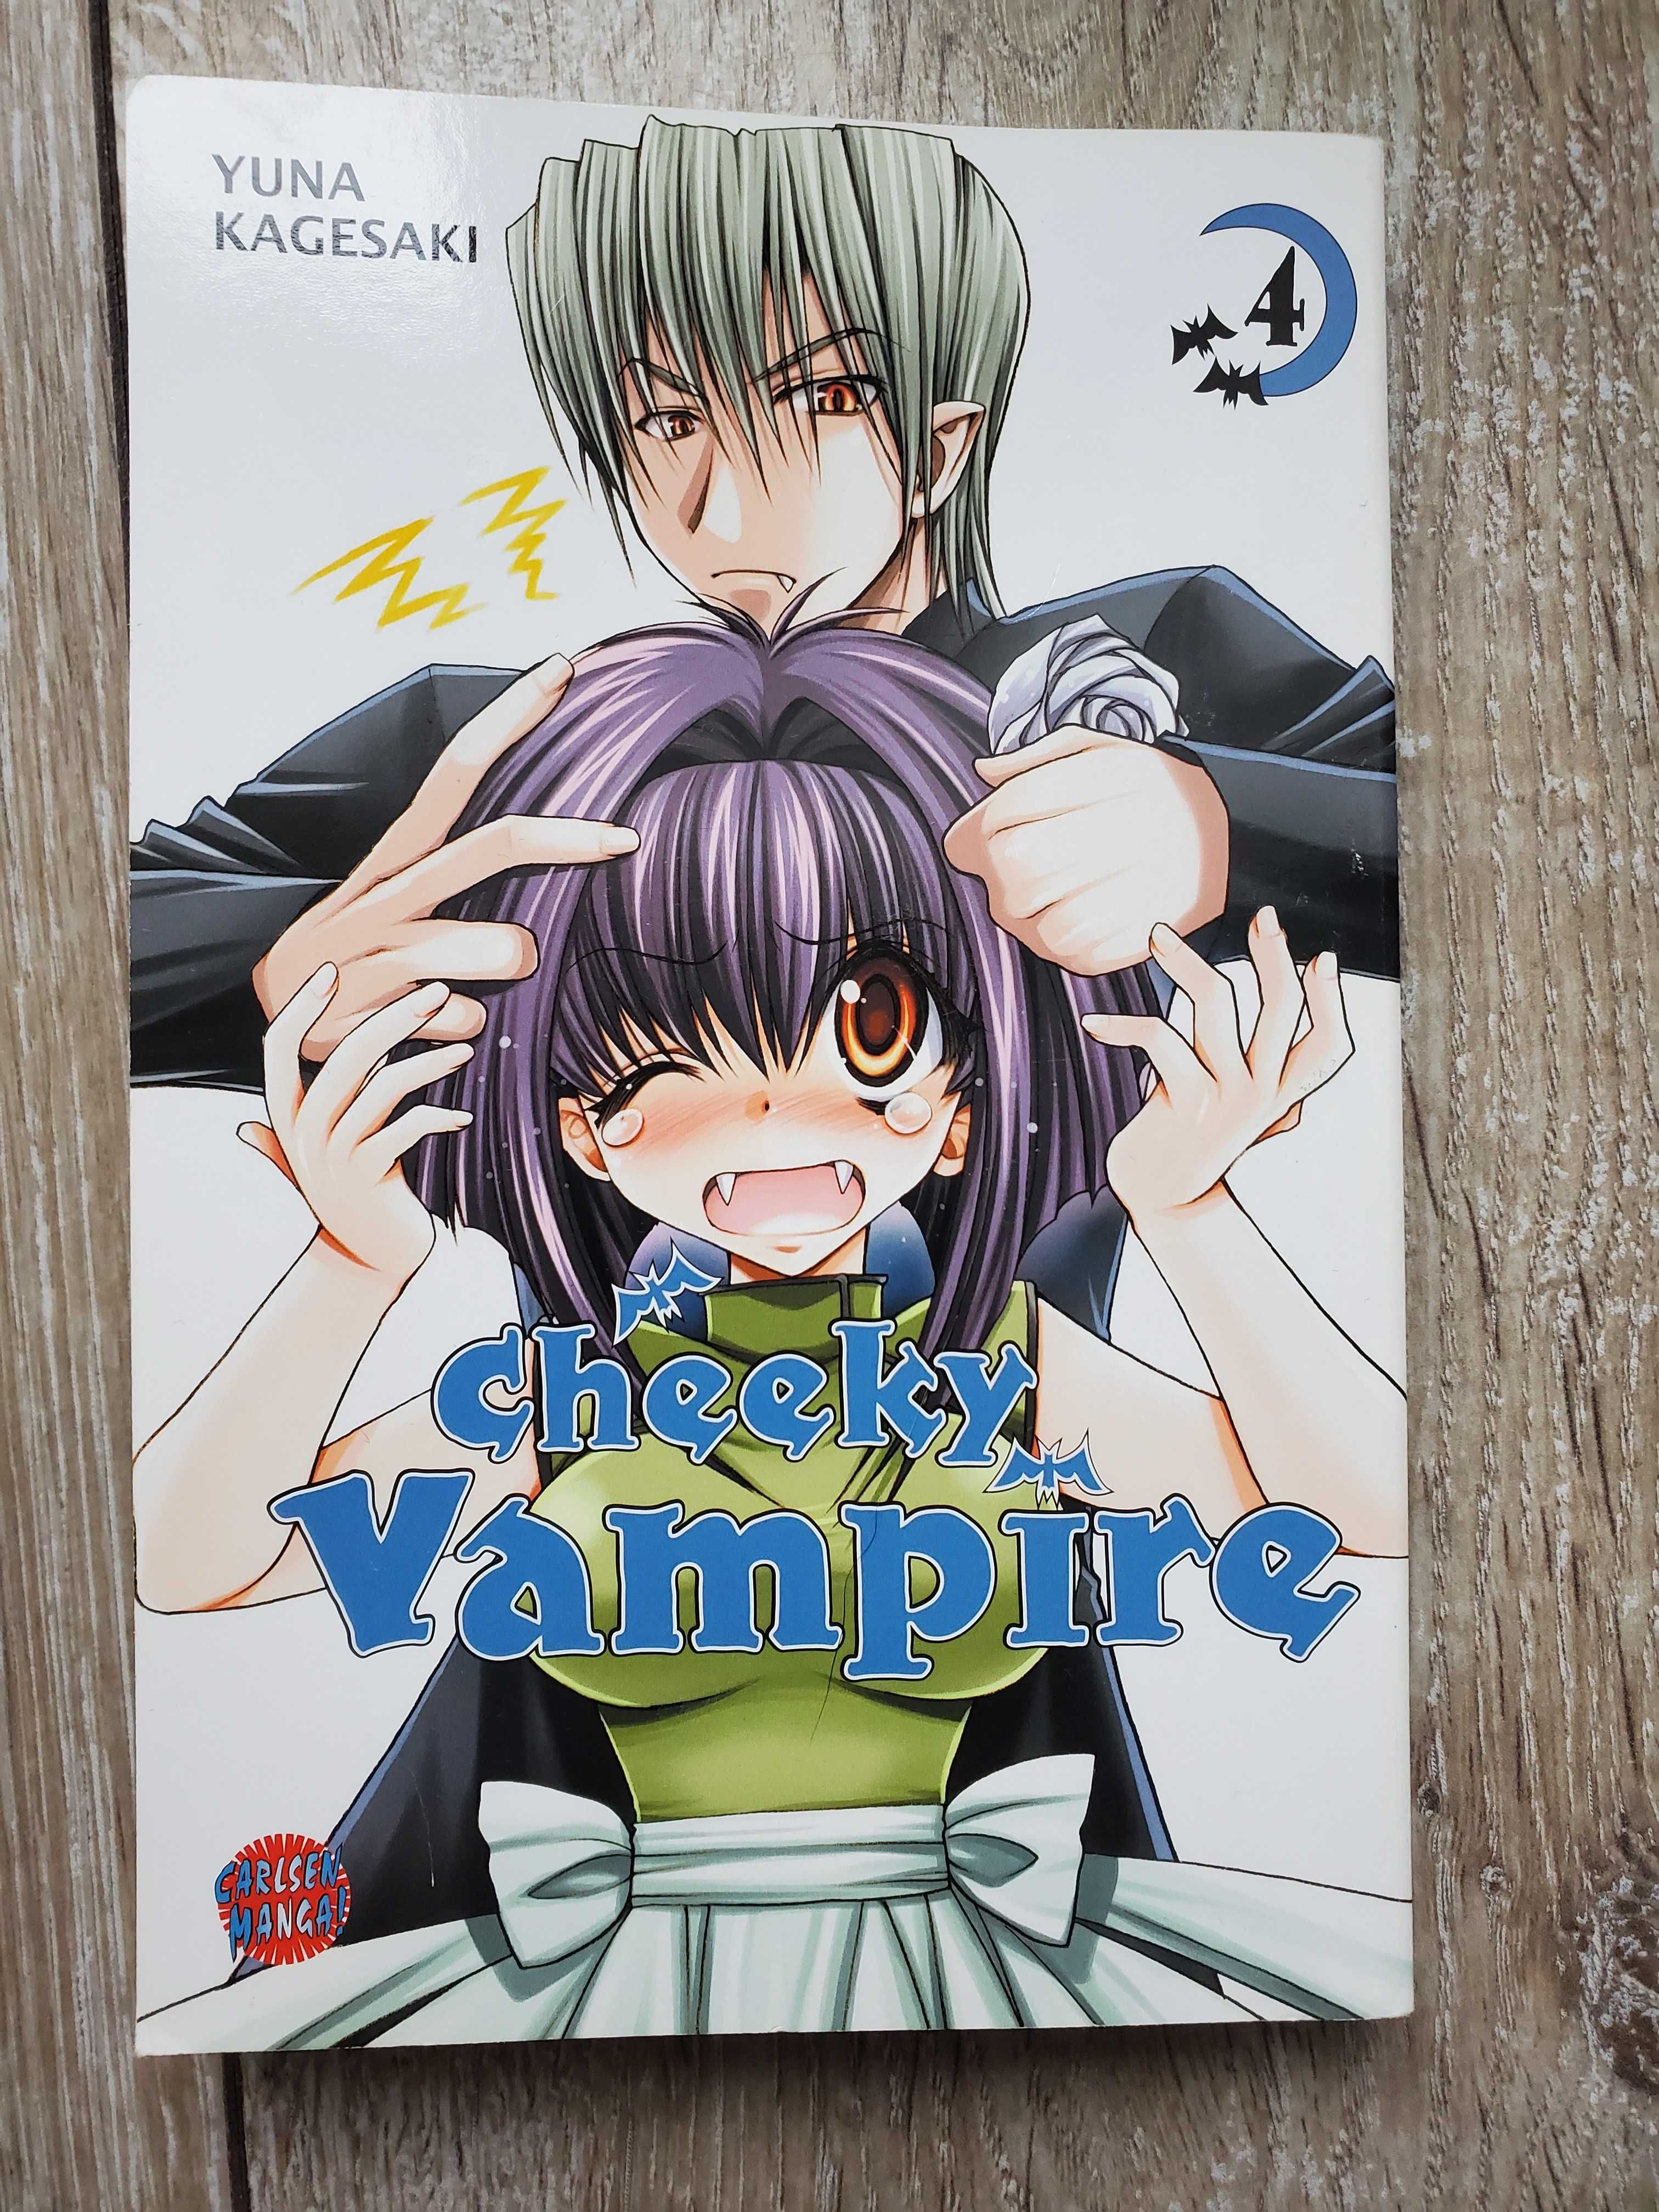 Manga: Cheeky Vampire vol 4 IN GERMANA